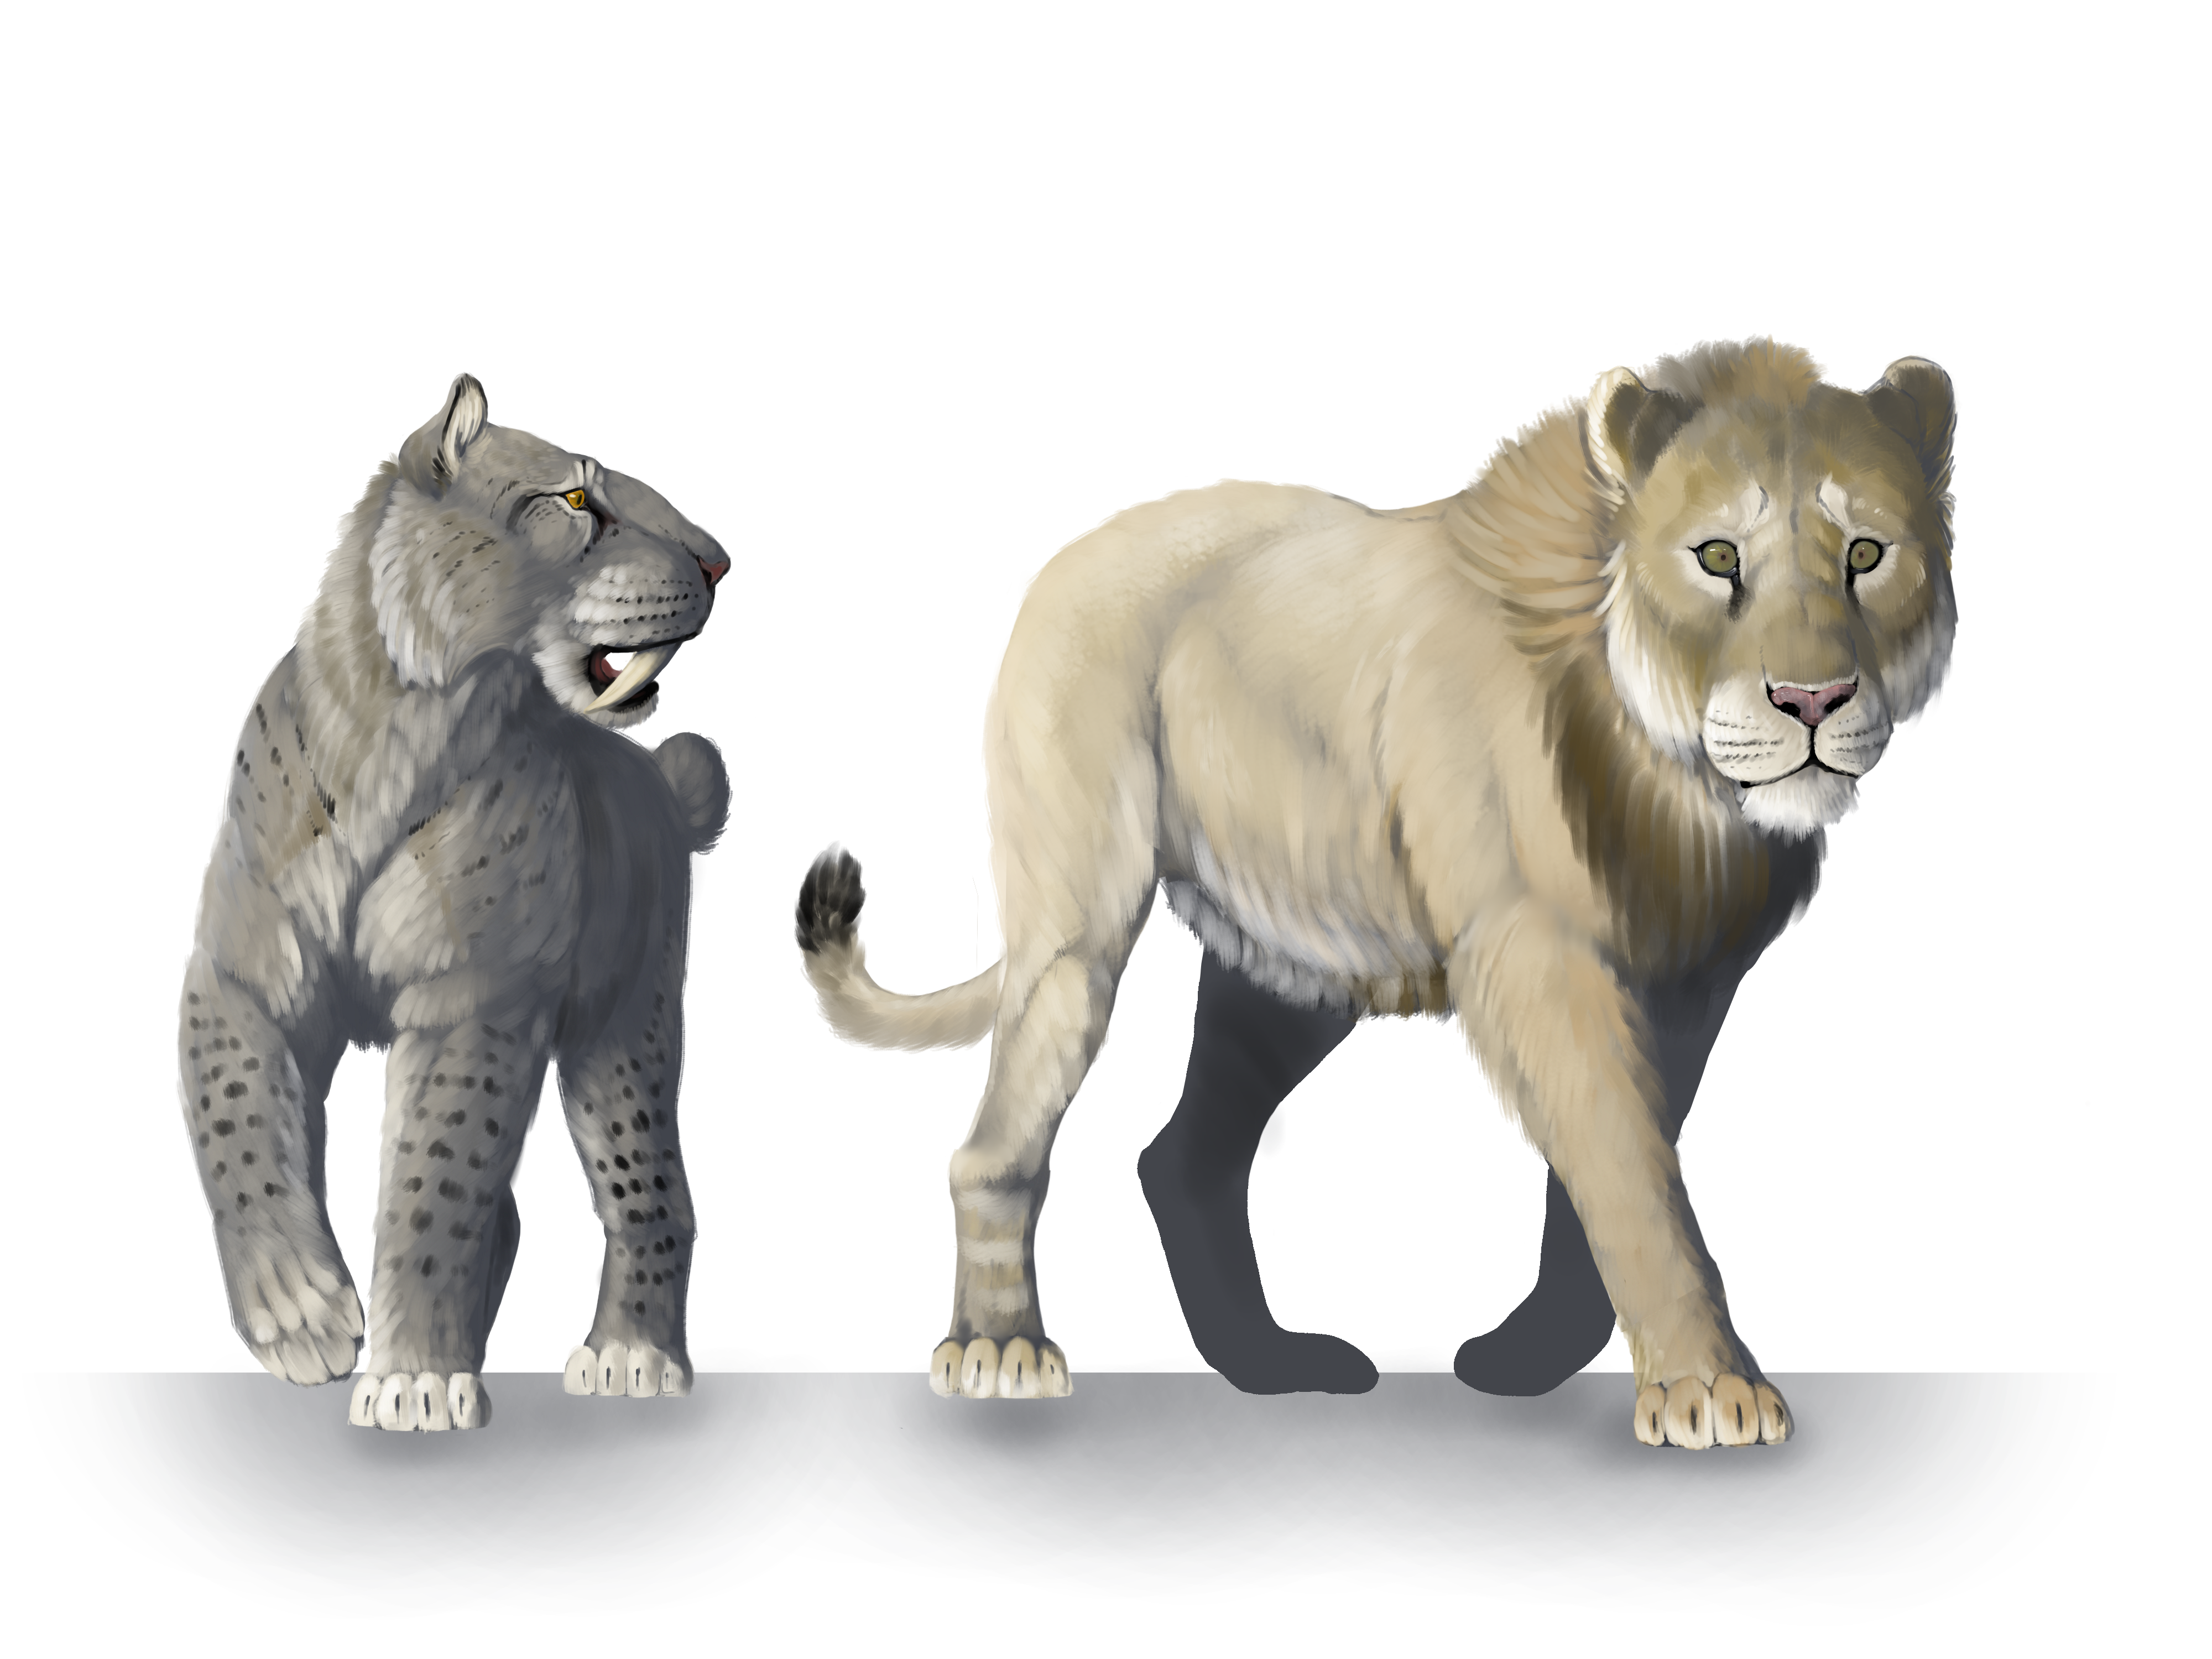 jaguar vs lion size